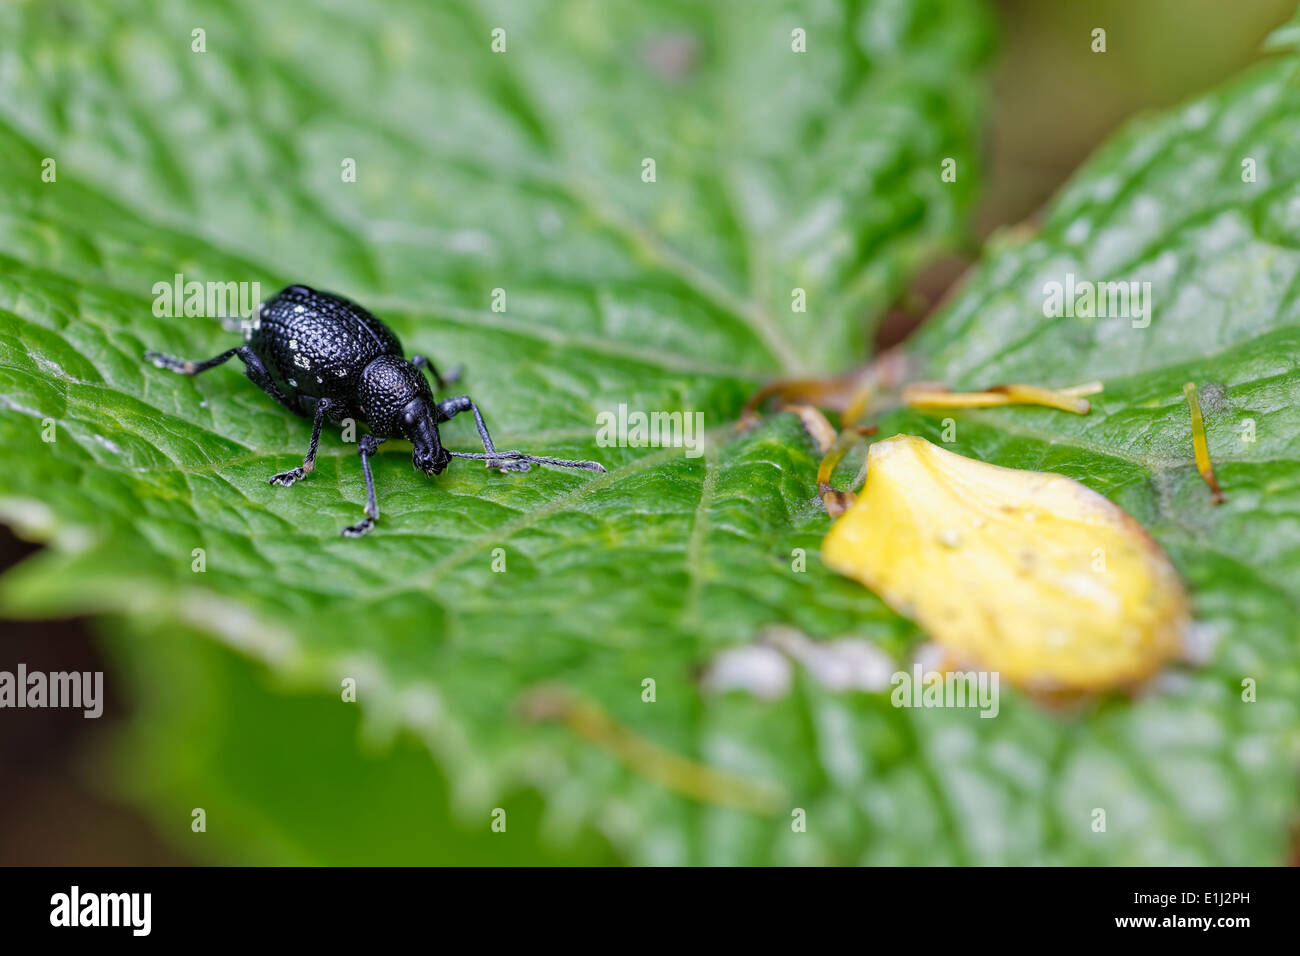 Stamm-Käfer, Curculionidae, auf Blatt sitzen, Leoben, Steiermark, Österreich Stockfoto